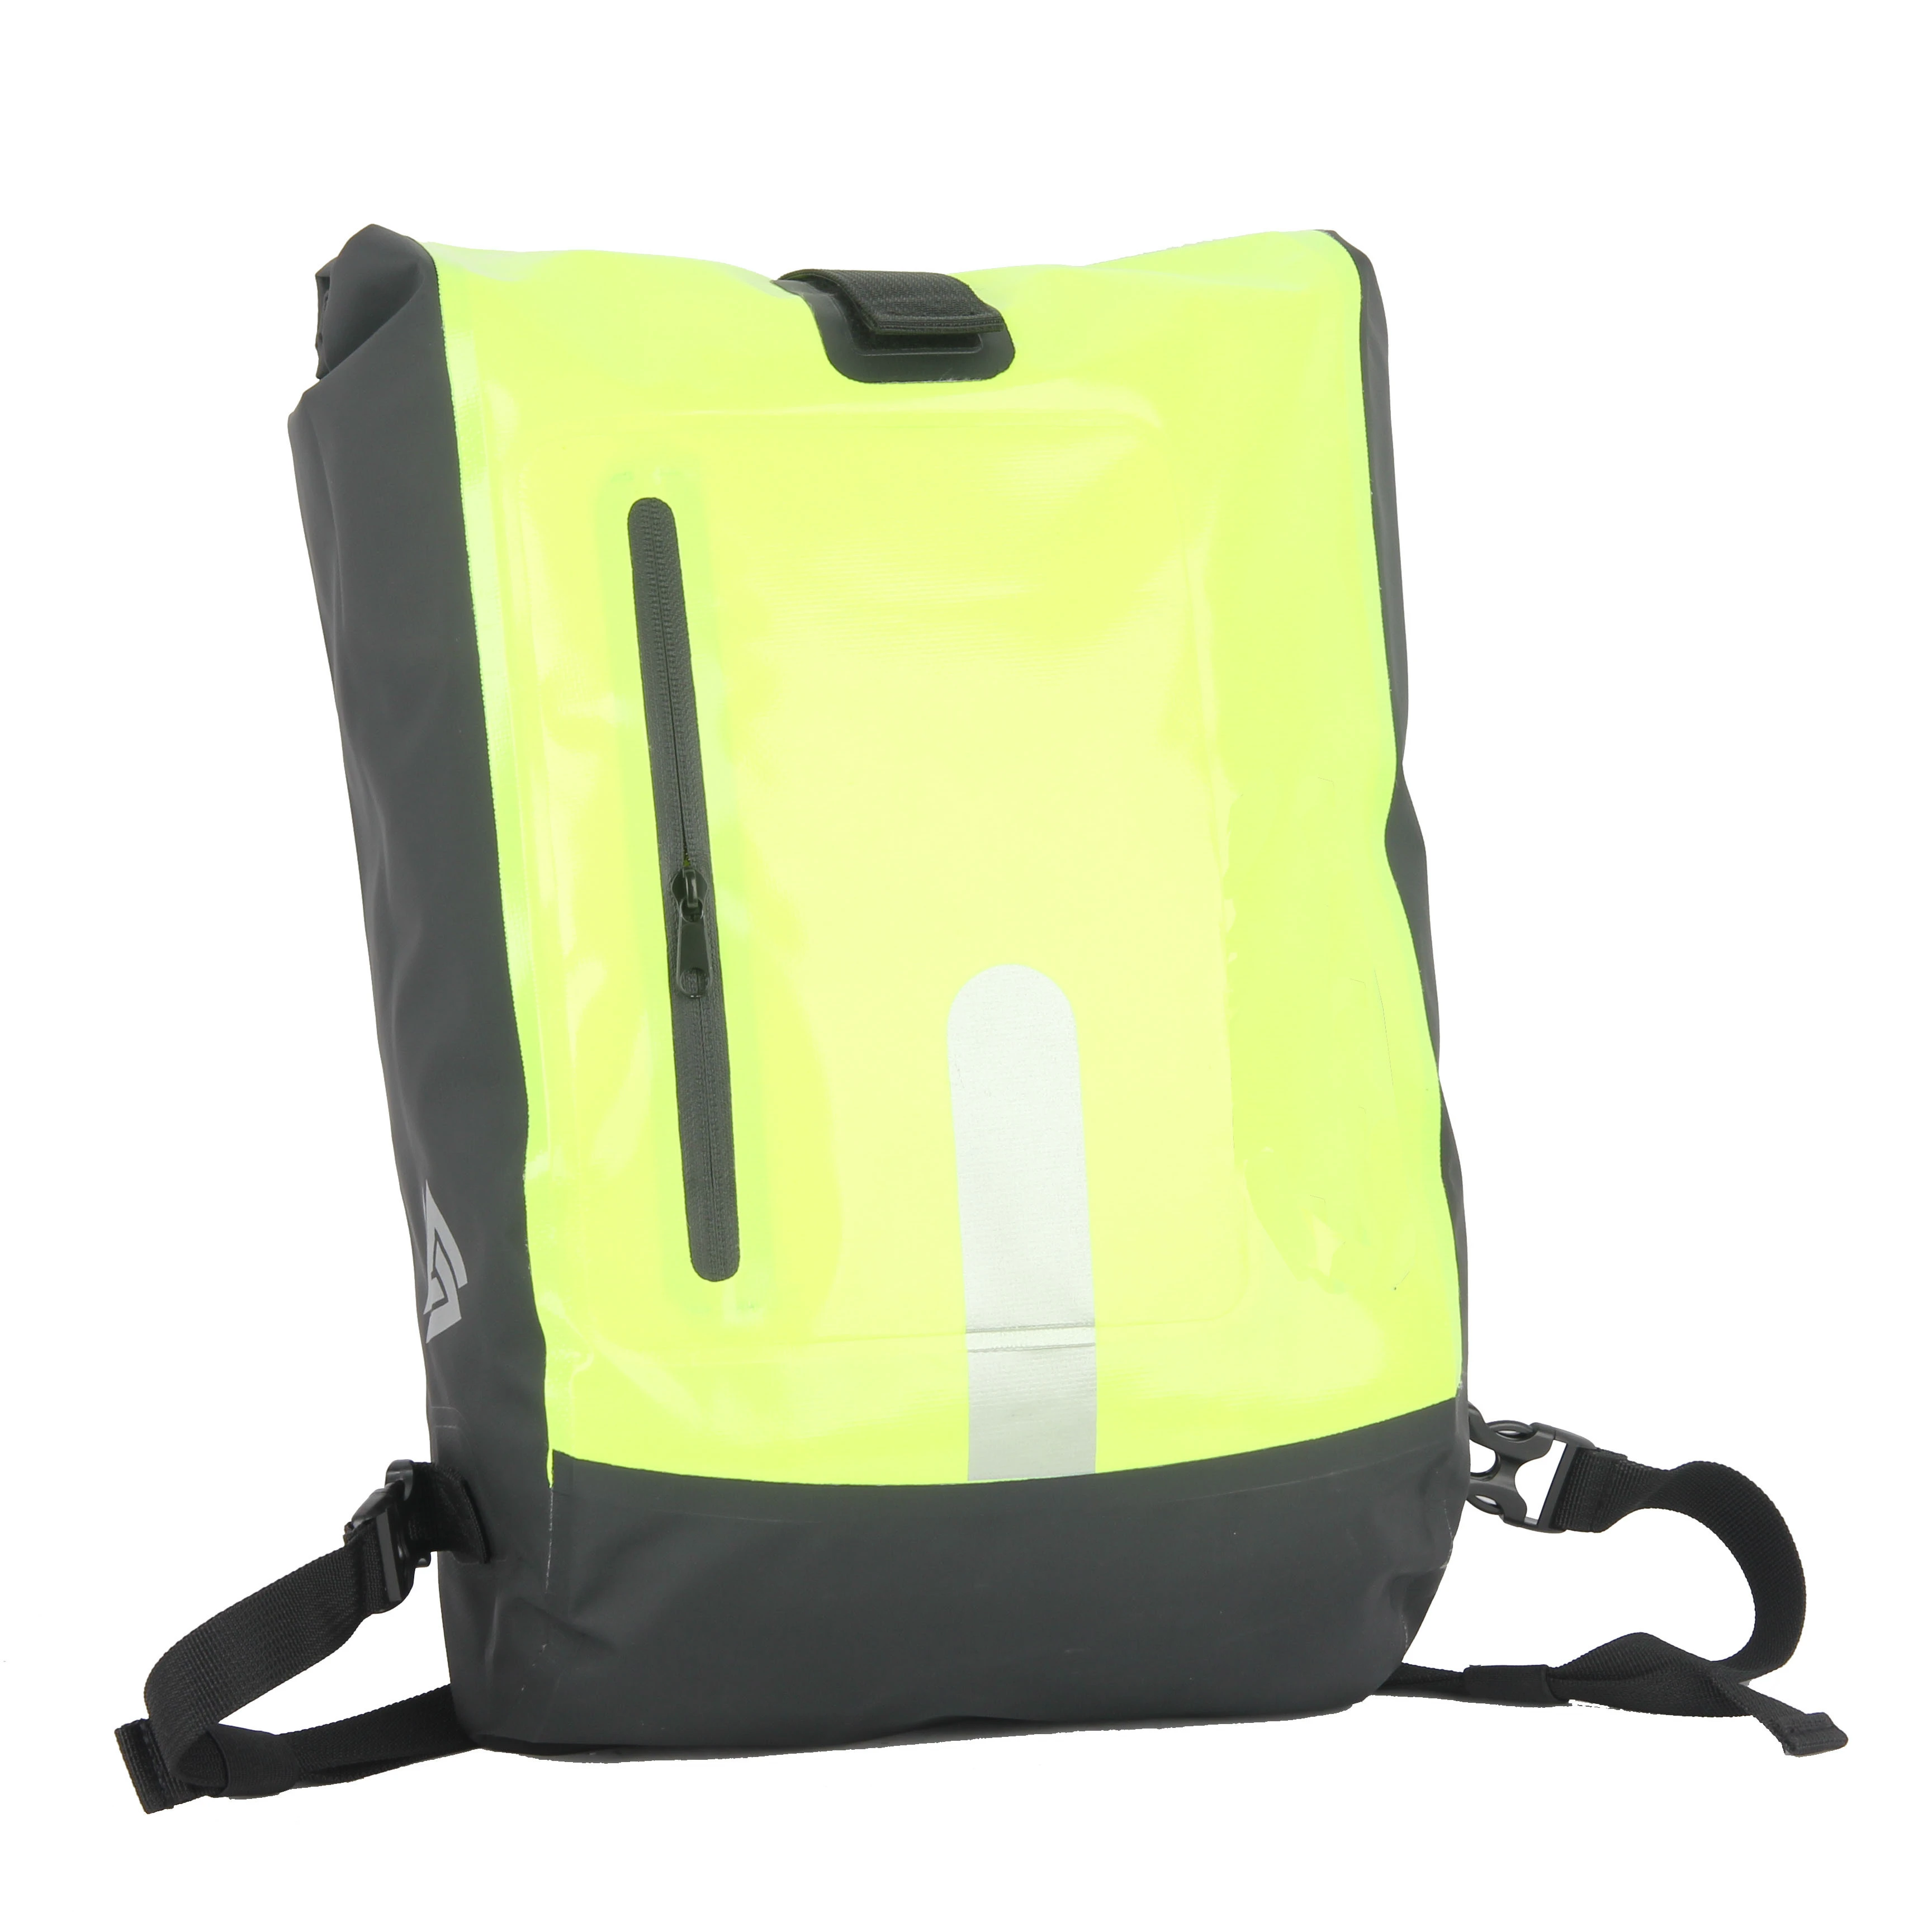 Waterproof green bike trunk rack carrier accessories bag